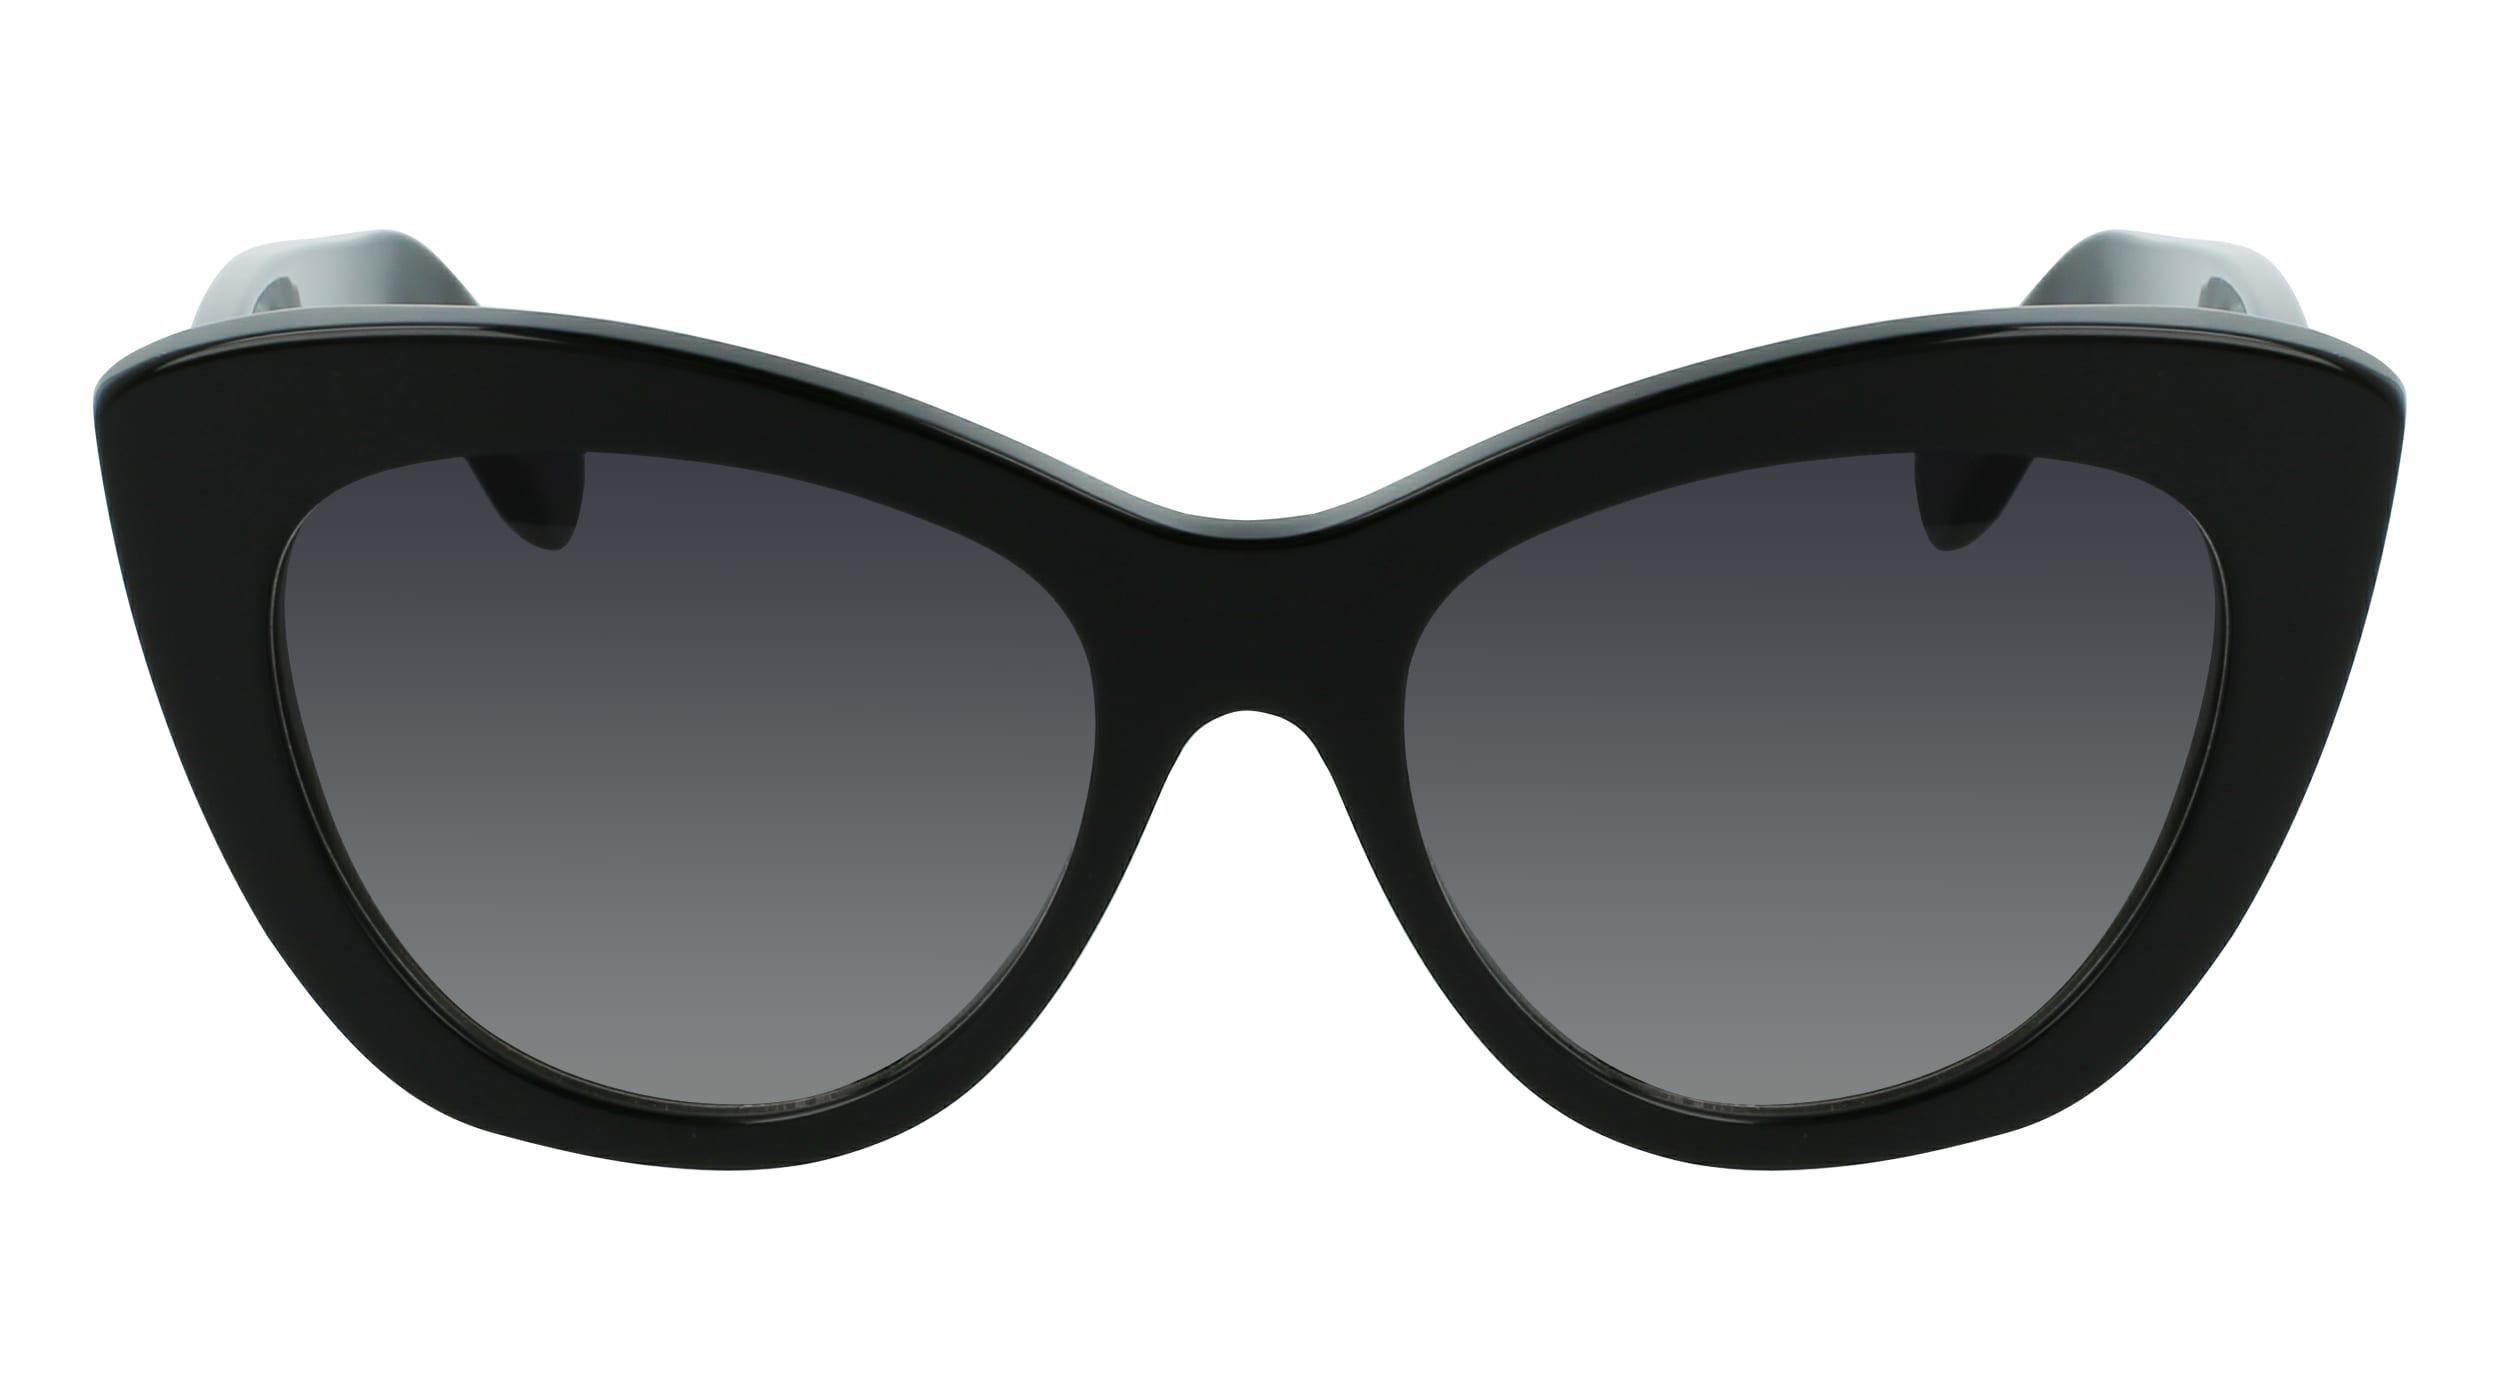 SALVATORE FERRAGAMO - Ferragamo Women Black Butterfly Sunglasses - Sf1022S